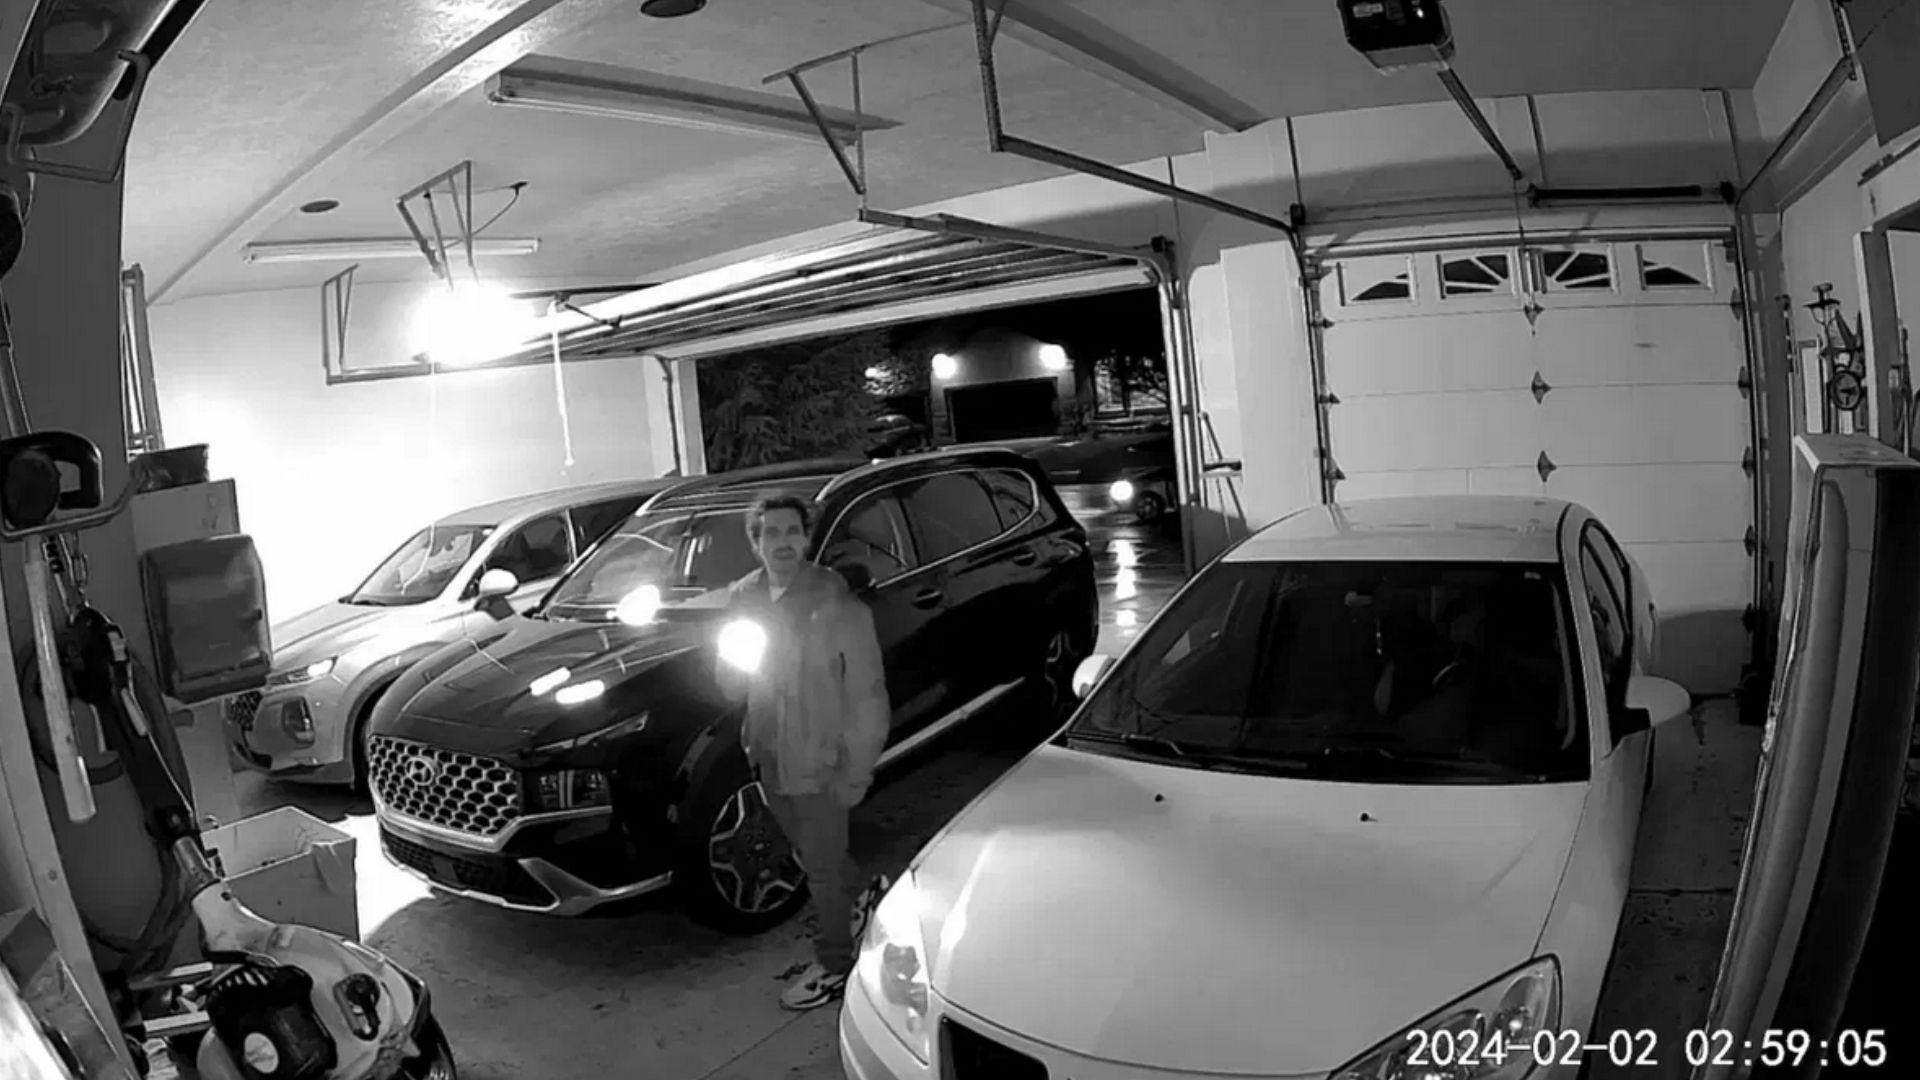 Car Thieves Apparently Hacked Garage Door Opener